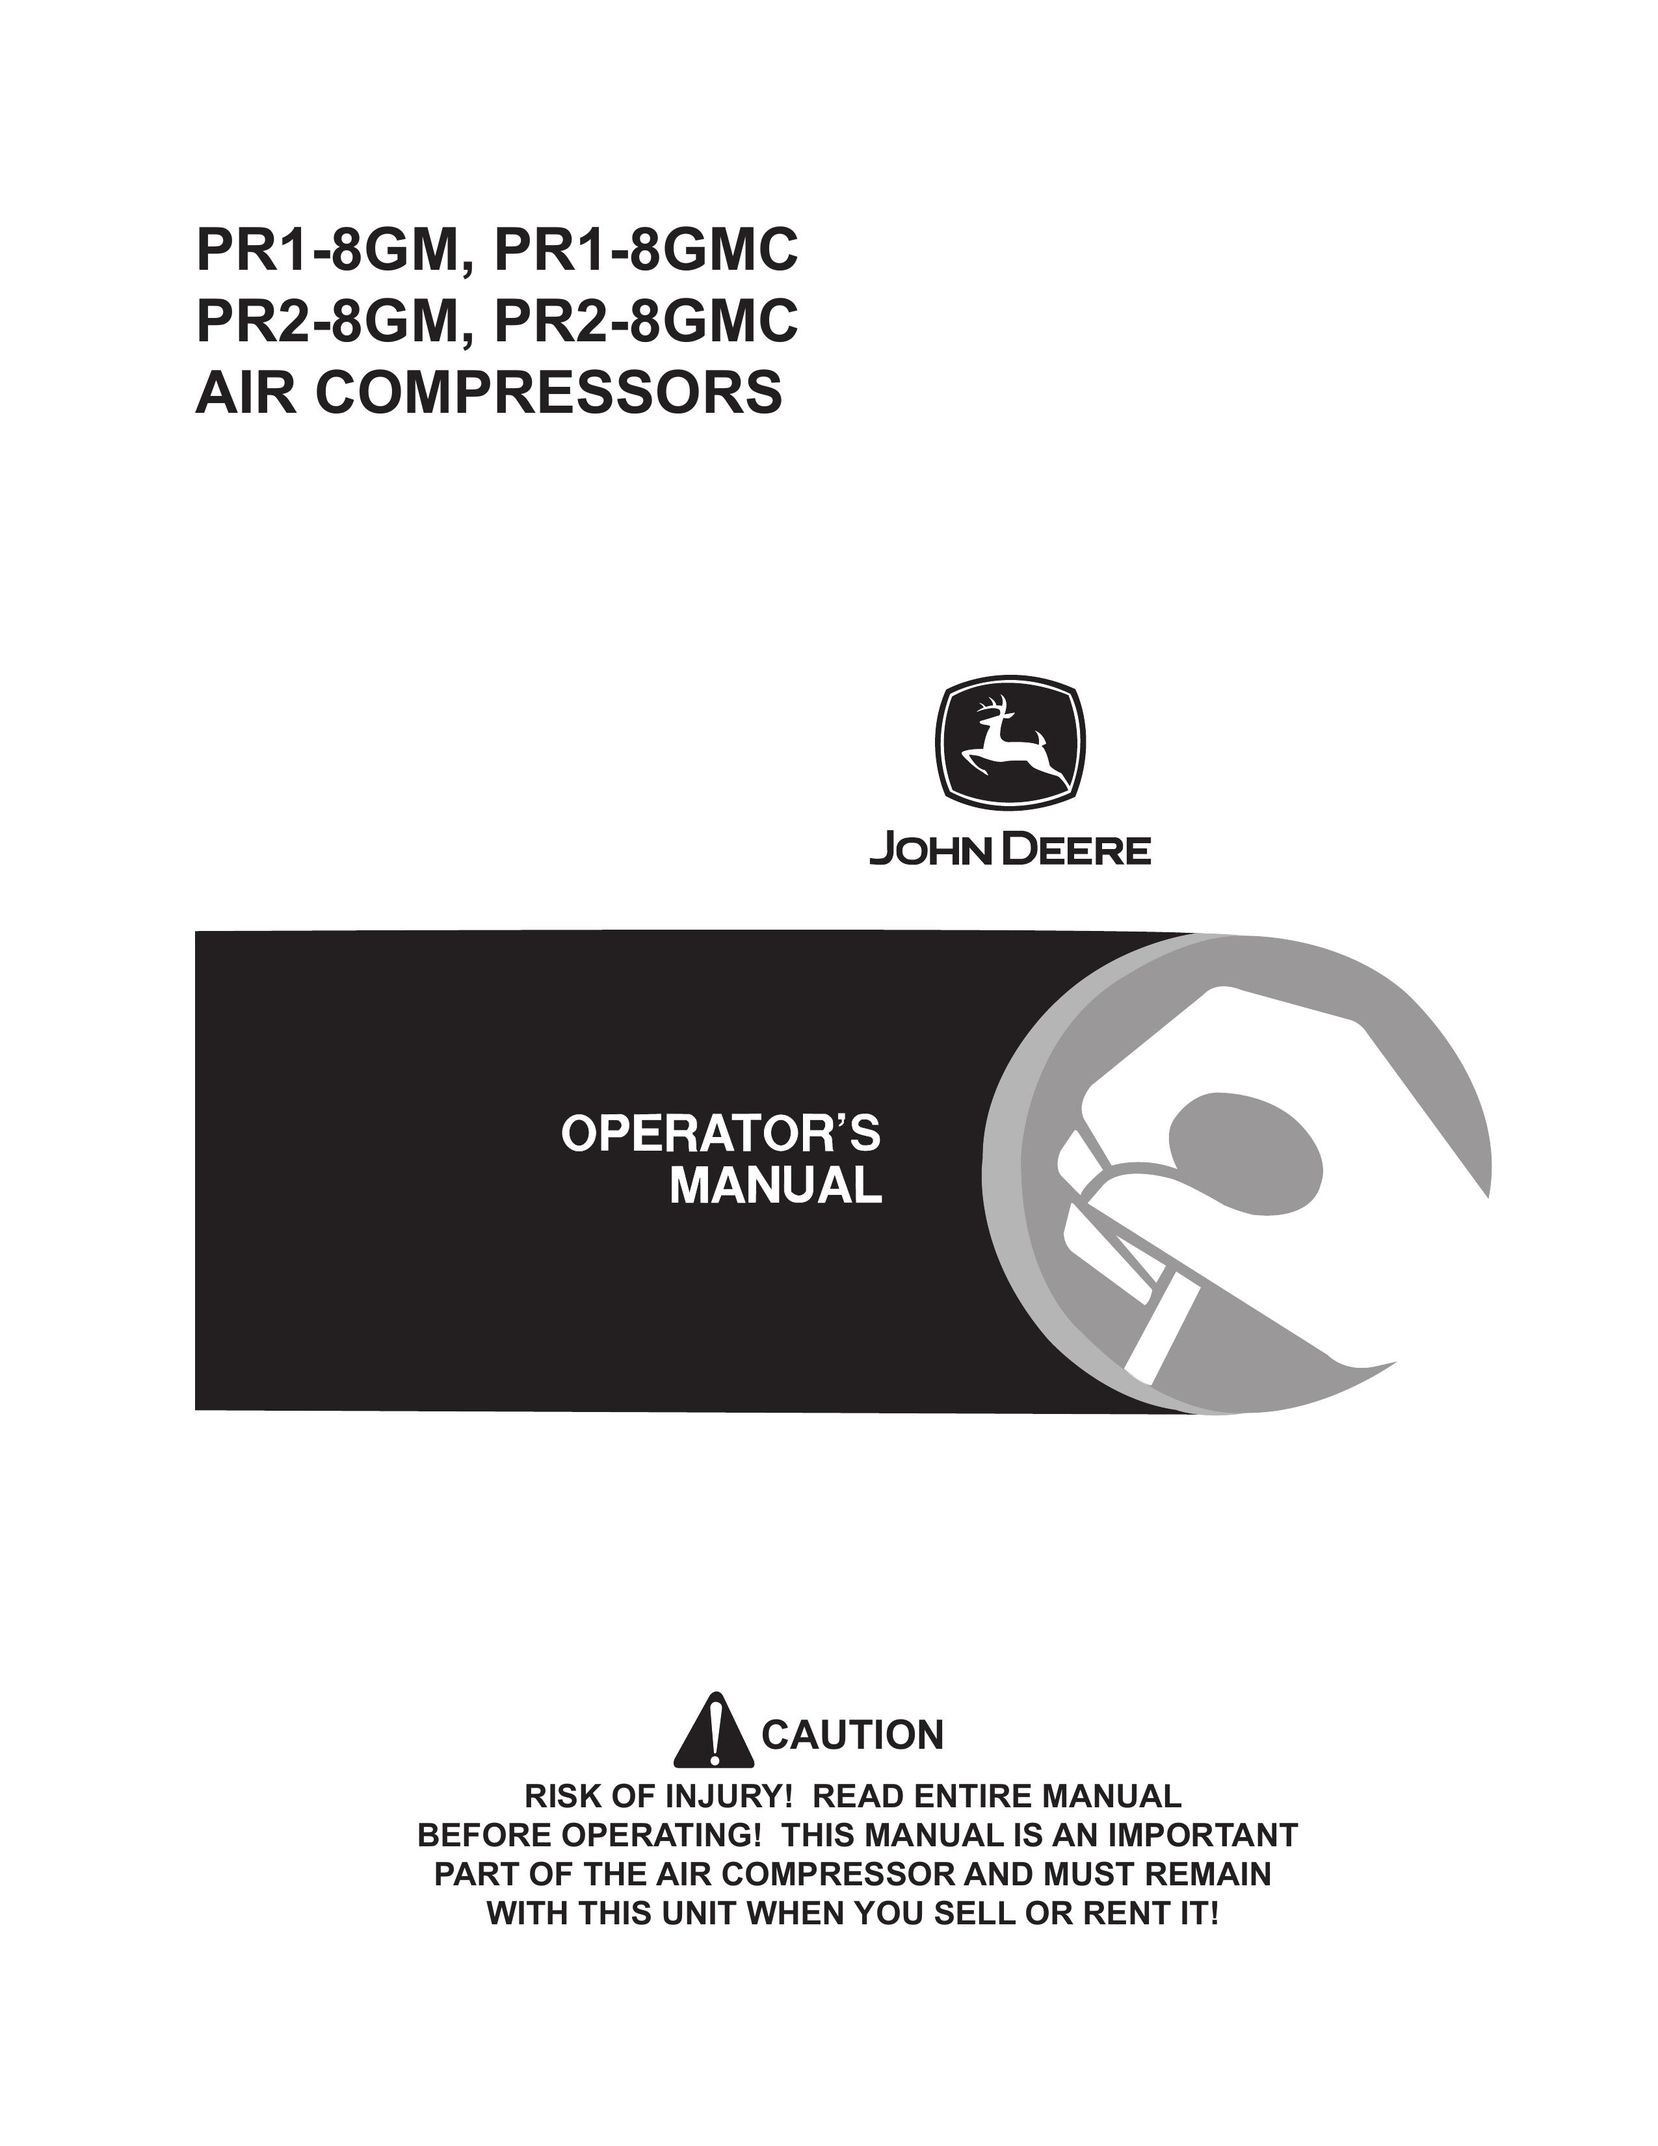 John Deere PR1-8GM Air Compressor User Manual